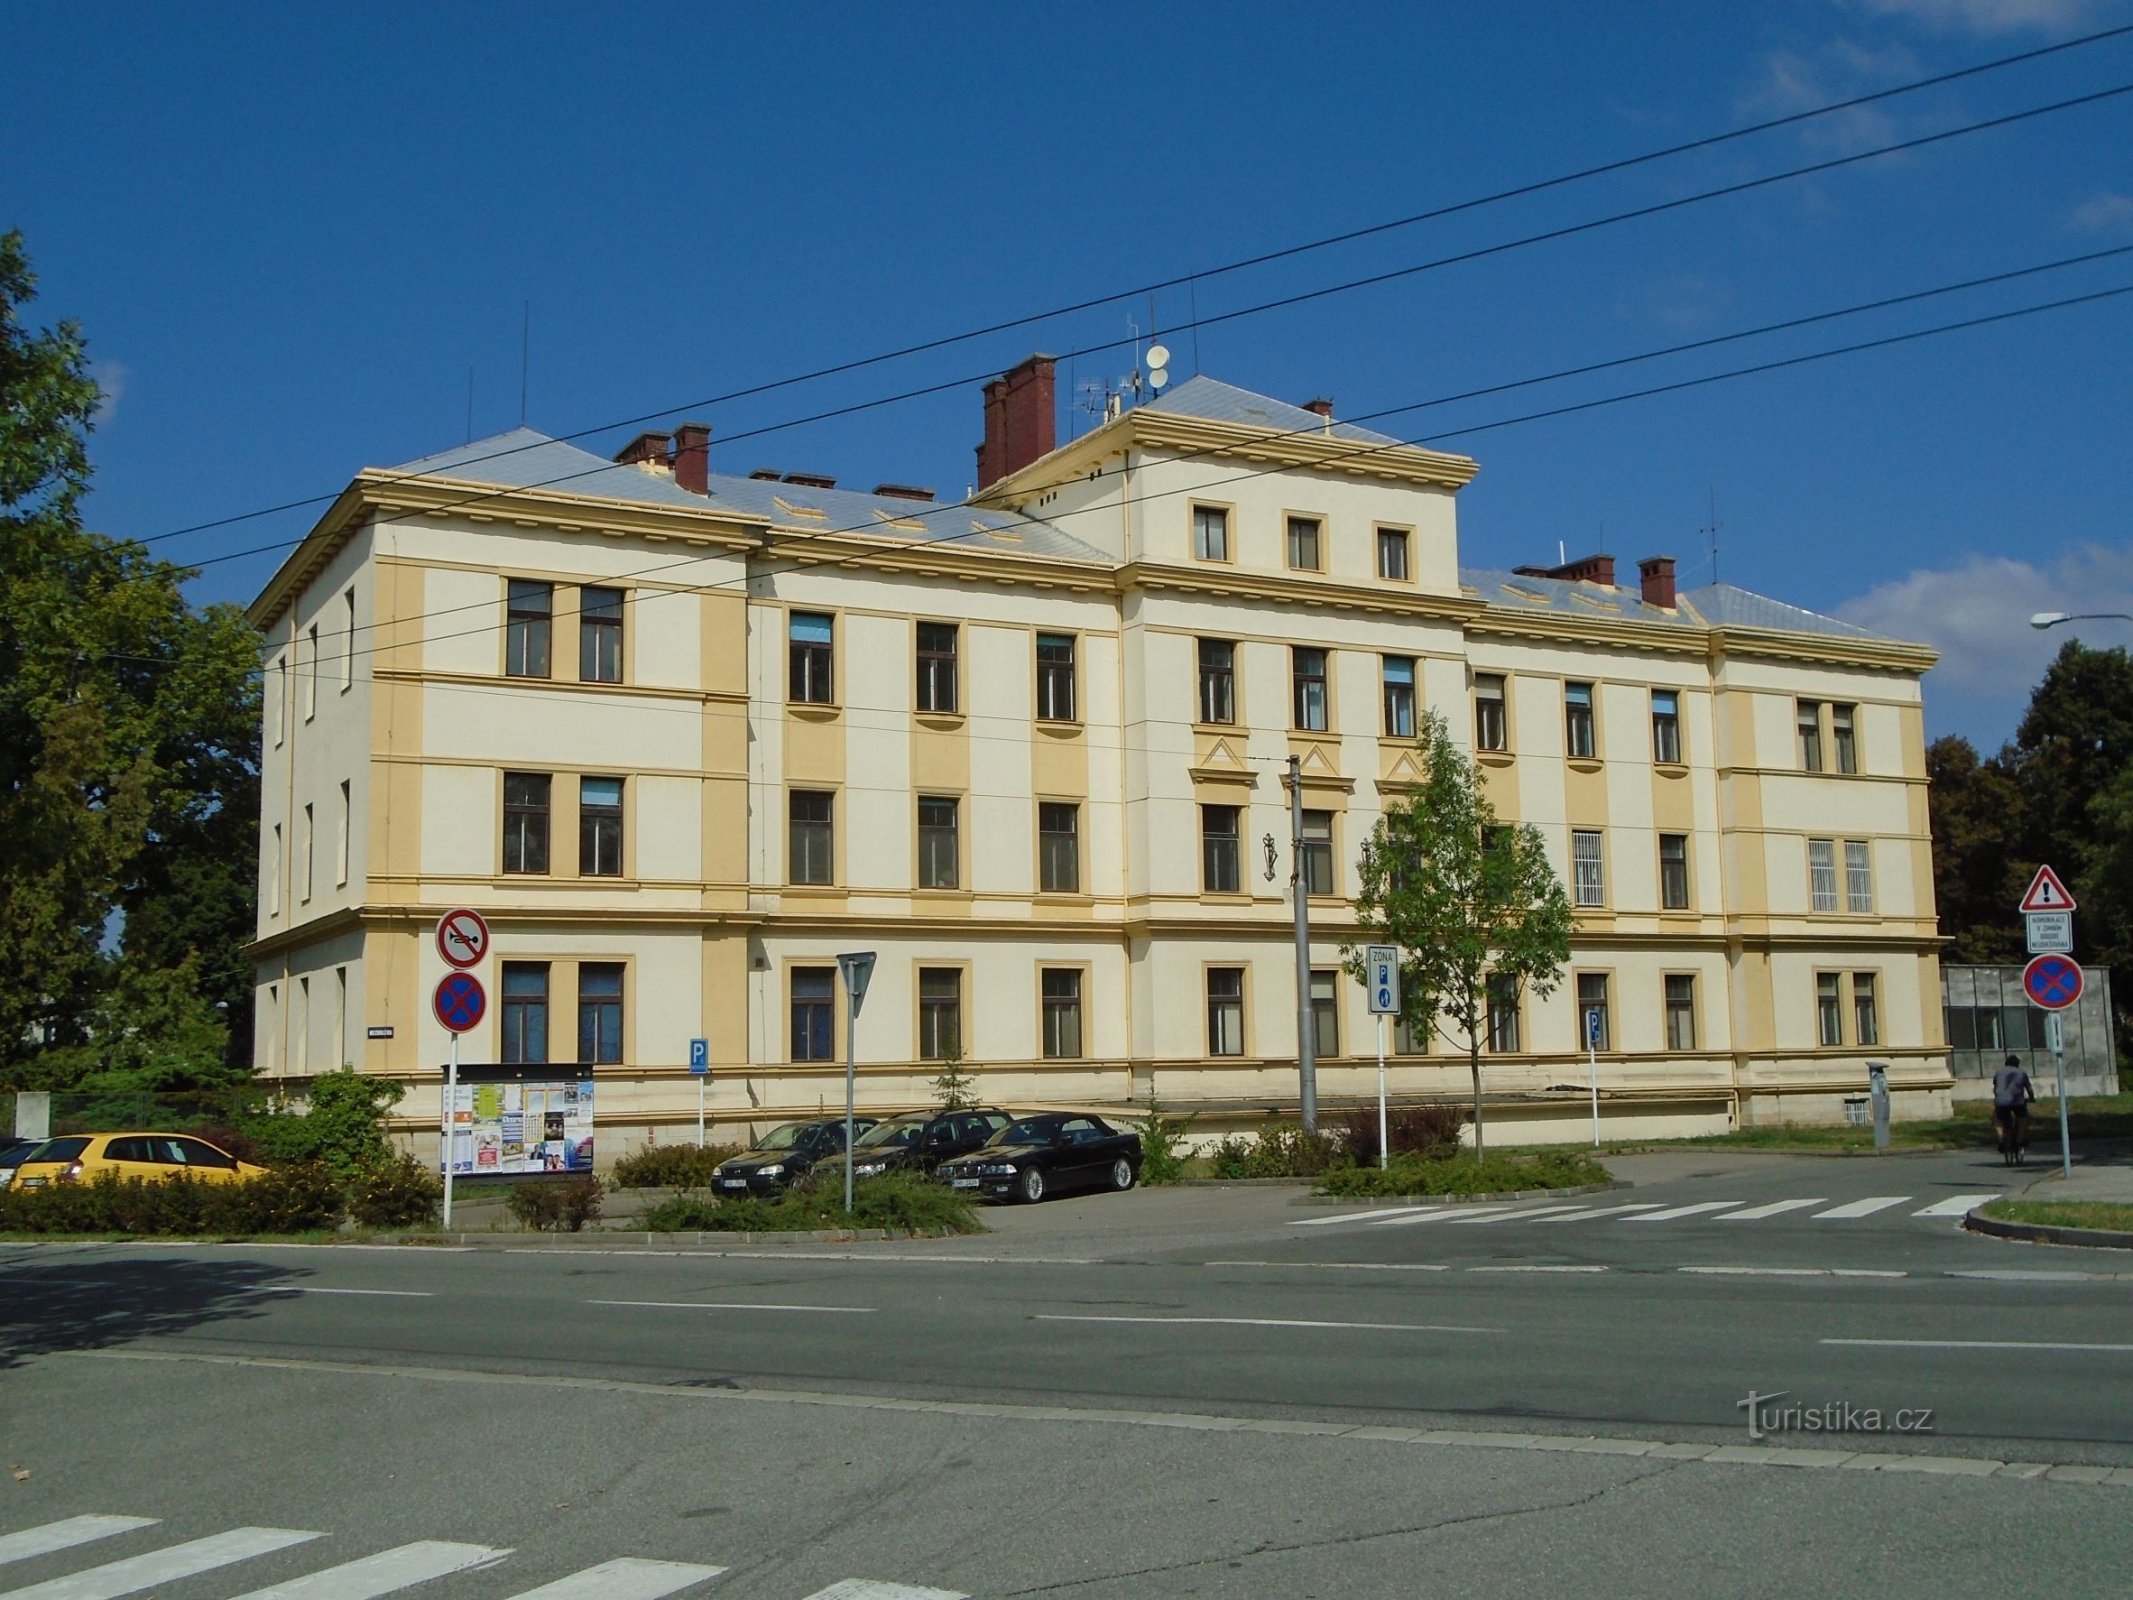 Stara bolnica (Hradec Králové, 2.9.2018. travnja XNUMX.)